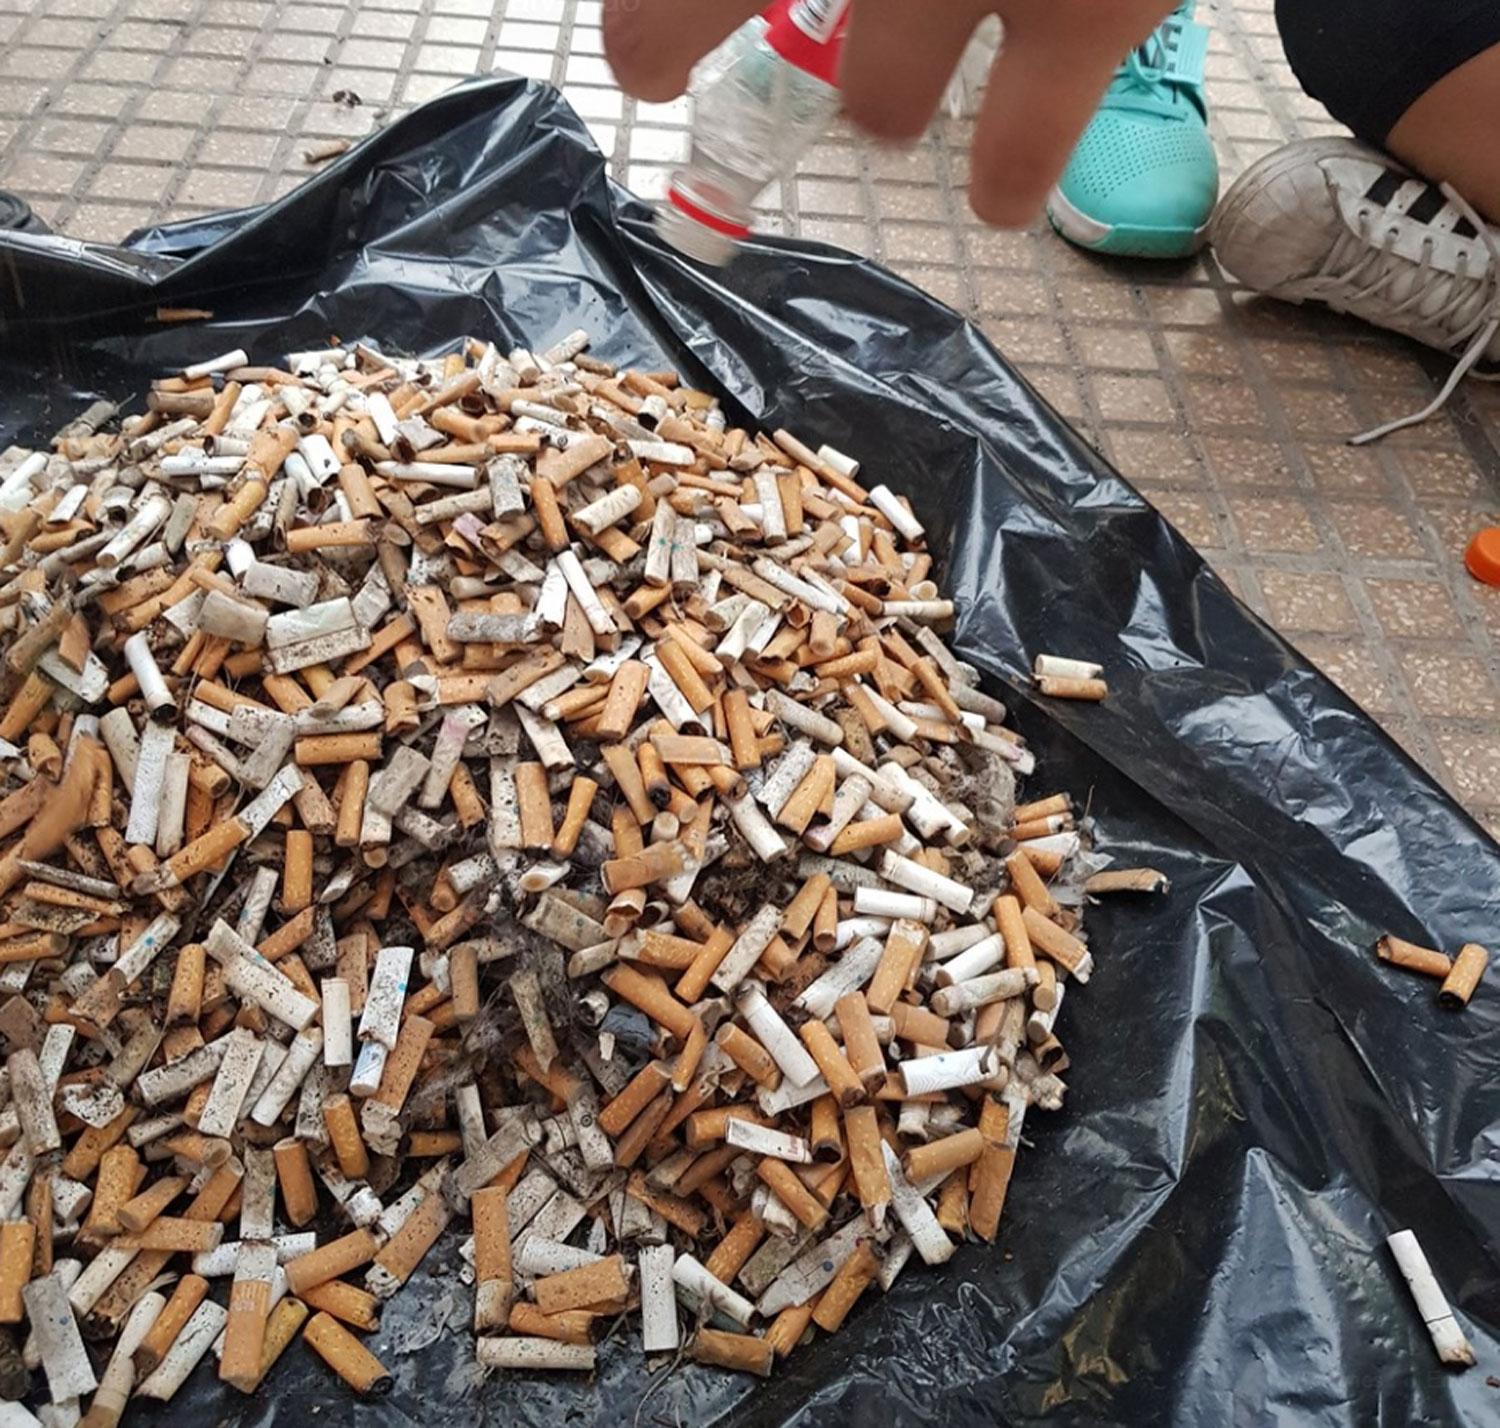 Un grupo de jóvenes recolectó más de 4.000 colillas de cigarrillos en el microcentro